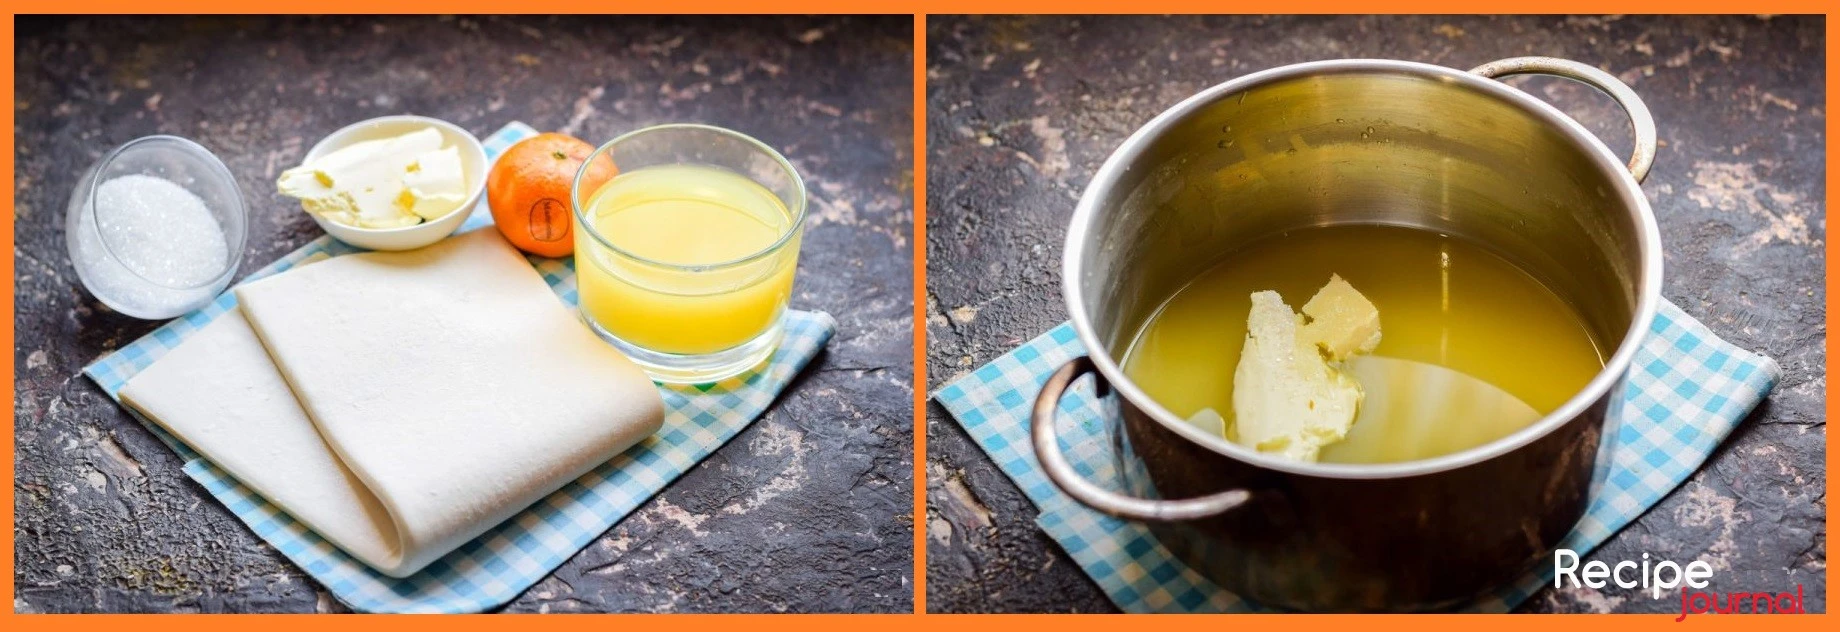 Подготовим небольшое количество ингредиентов для нашего пирога с мандаринами. Мандарины выбираем сладкие, без косточек. Очищаем от кожицы и белых волокон, разбираем на дольки. Включаем духовку на разогрев до 200<sup>о</sup>. Готовим соус. В кастрюлю вливаем апельсиновый сок, добавляем сахар и масло, варим примерно 10 минут.